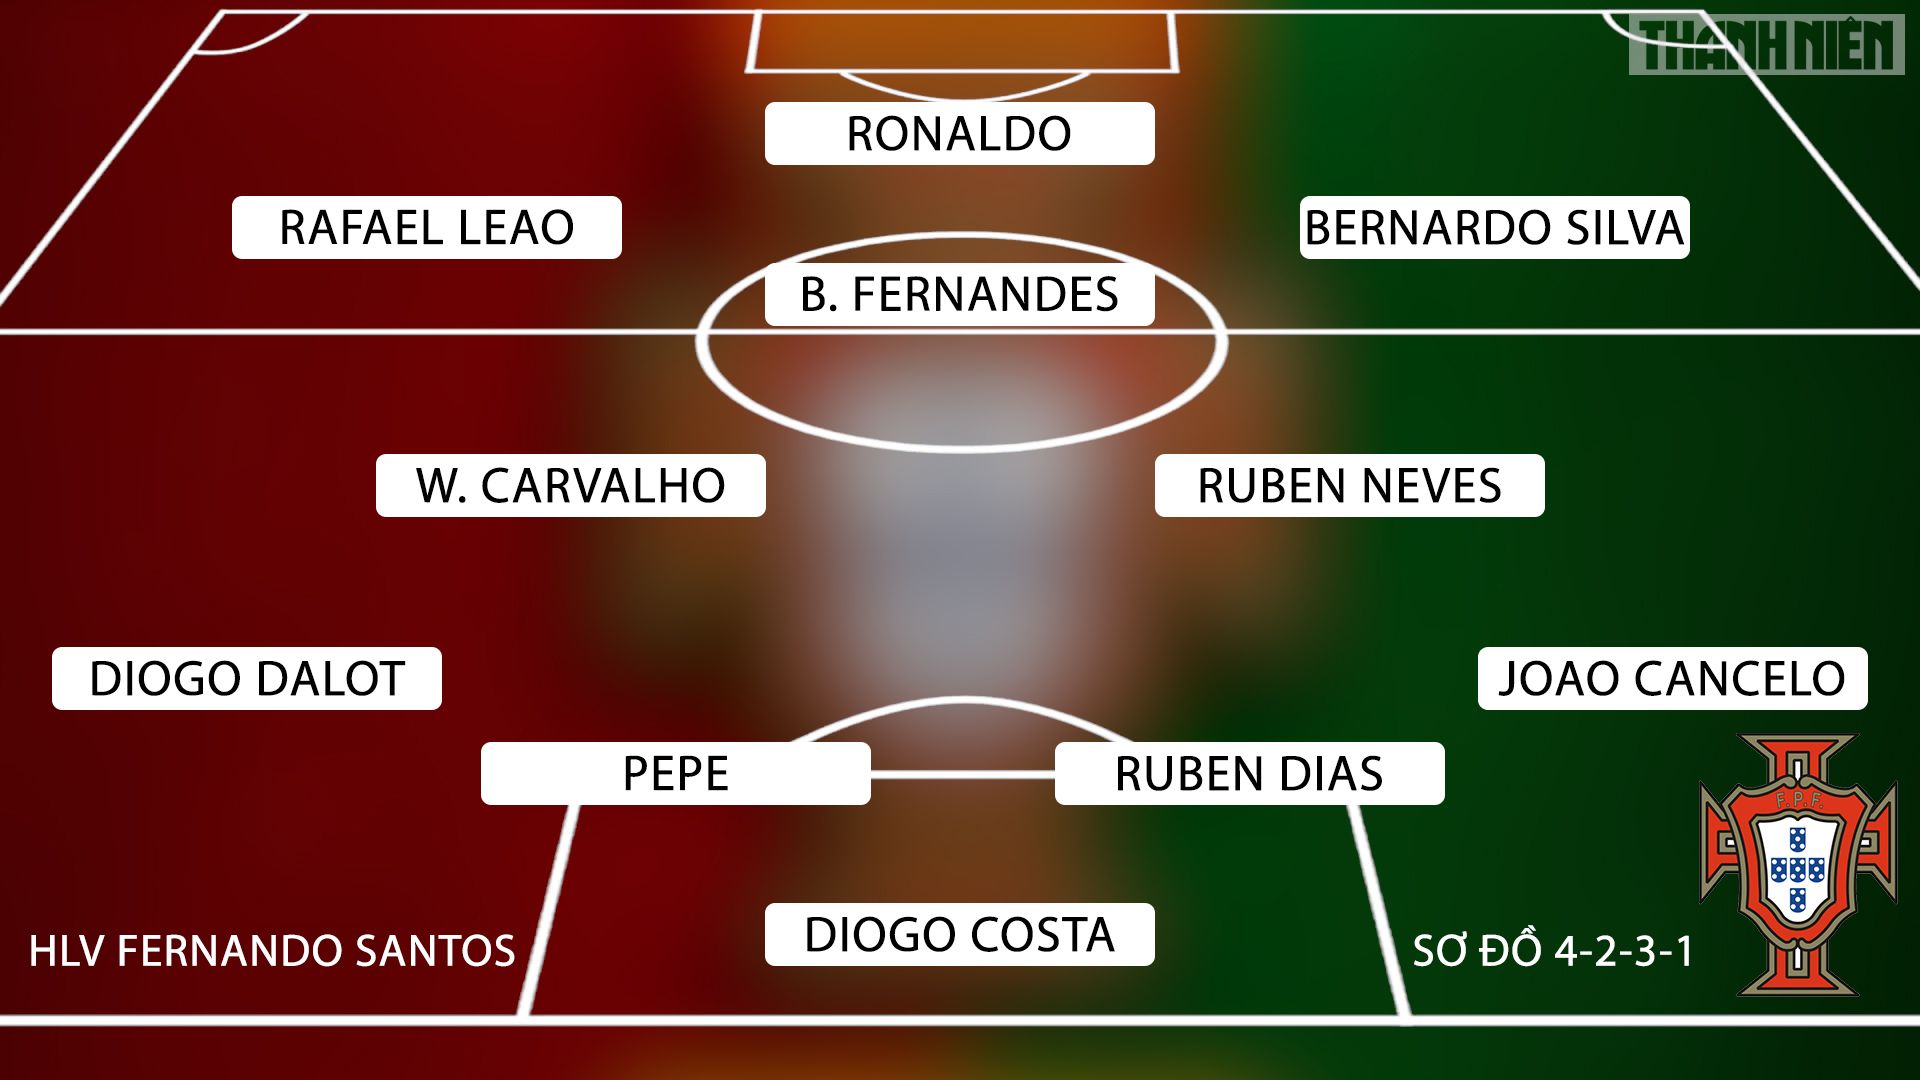 Đội hình tuyển Bồ Đào Nha: Với các ngôi sao như Ronaldo, Bernardo Silva, Bruno Fernandes, Pepe,...đội hình tuyển Bồ Đào Nha luôn là một trong những đối thủ đáng gờm tại các giải đấu quốc tế. Hãy xem những hình ảnh về đội hình tuyển Bồ Đào Nha để cập nhật các thông tin mới nhất và ủng hộ đội tuyển yêu quý của bạn.